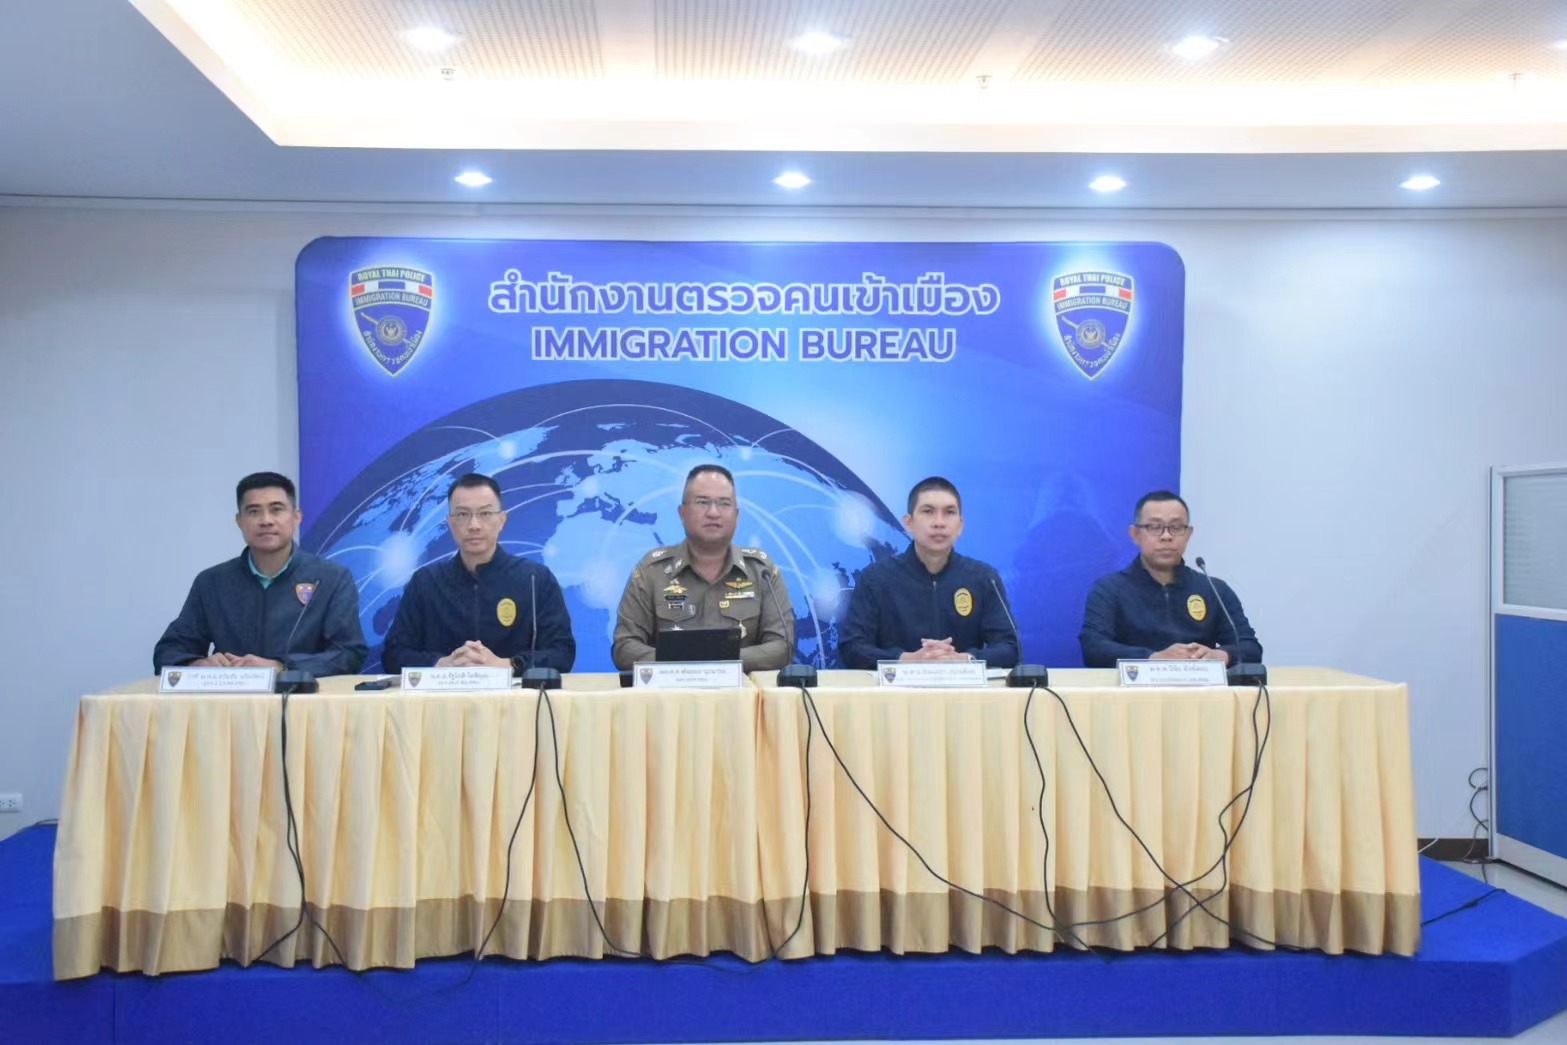 中国男子造假泰国官方证件、协助他人偷渡被捕